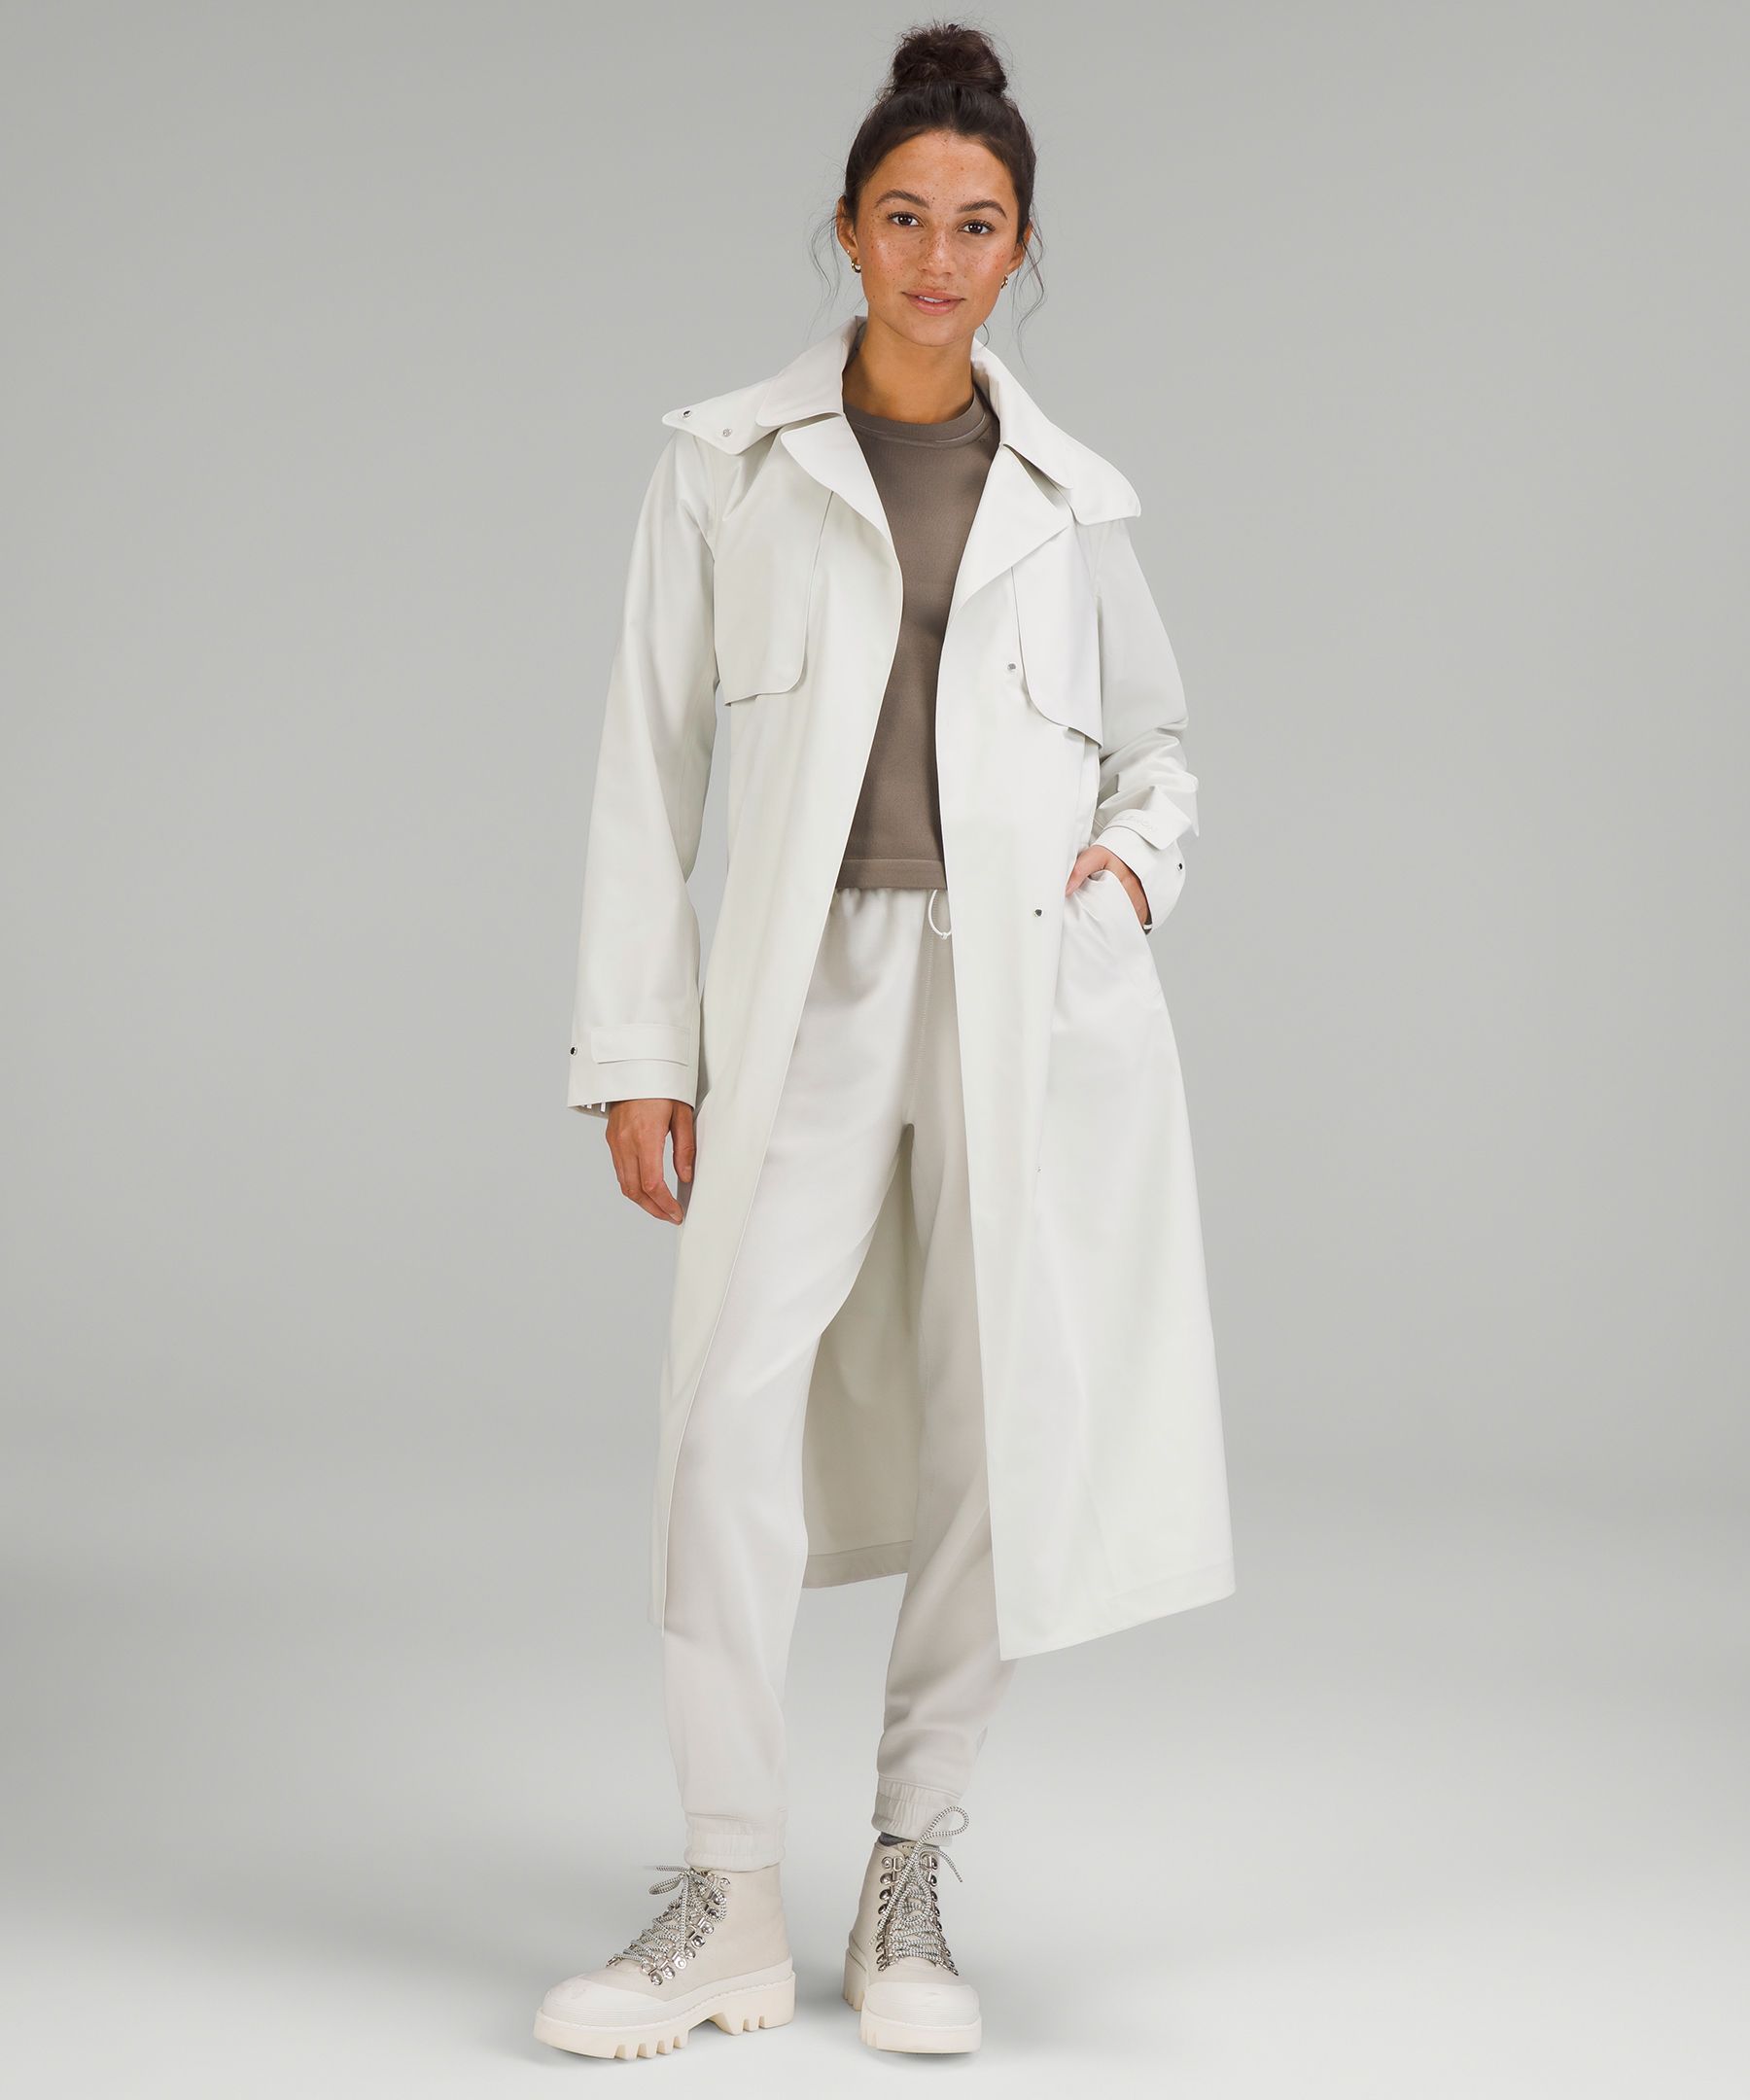 lululemon athletica White Coats & Jackets for Girls Sizes (4+)